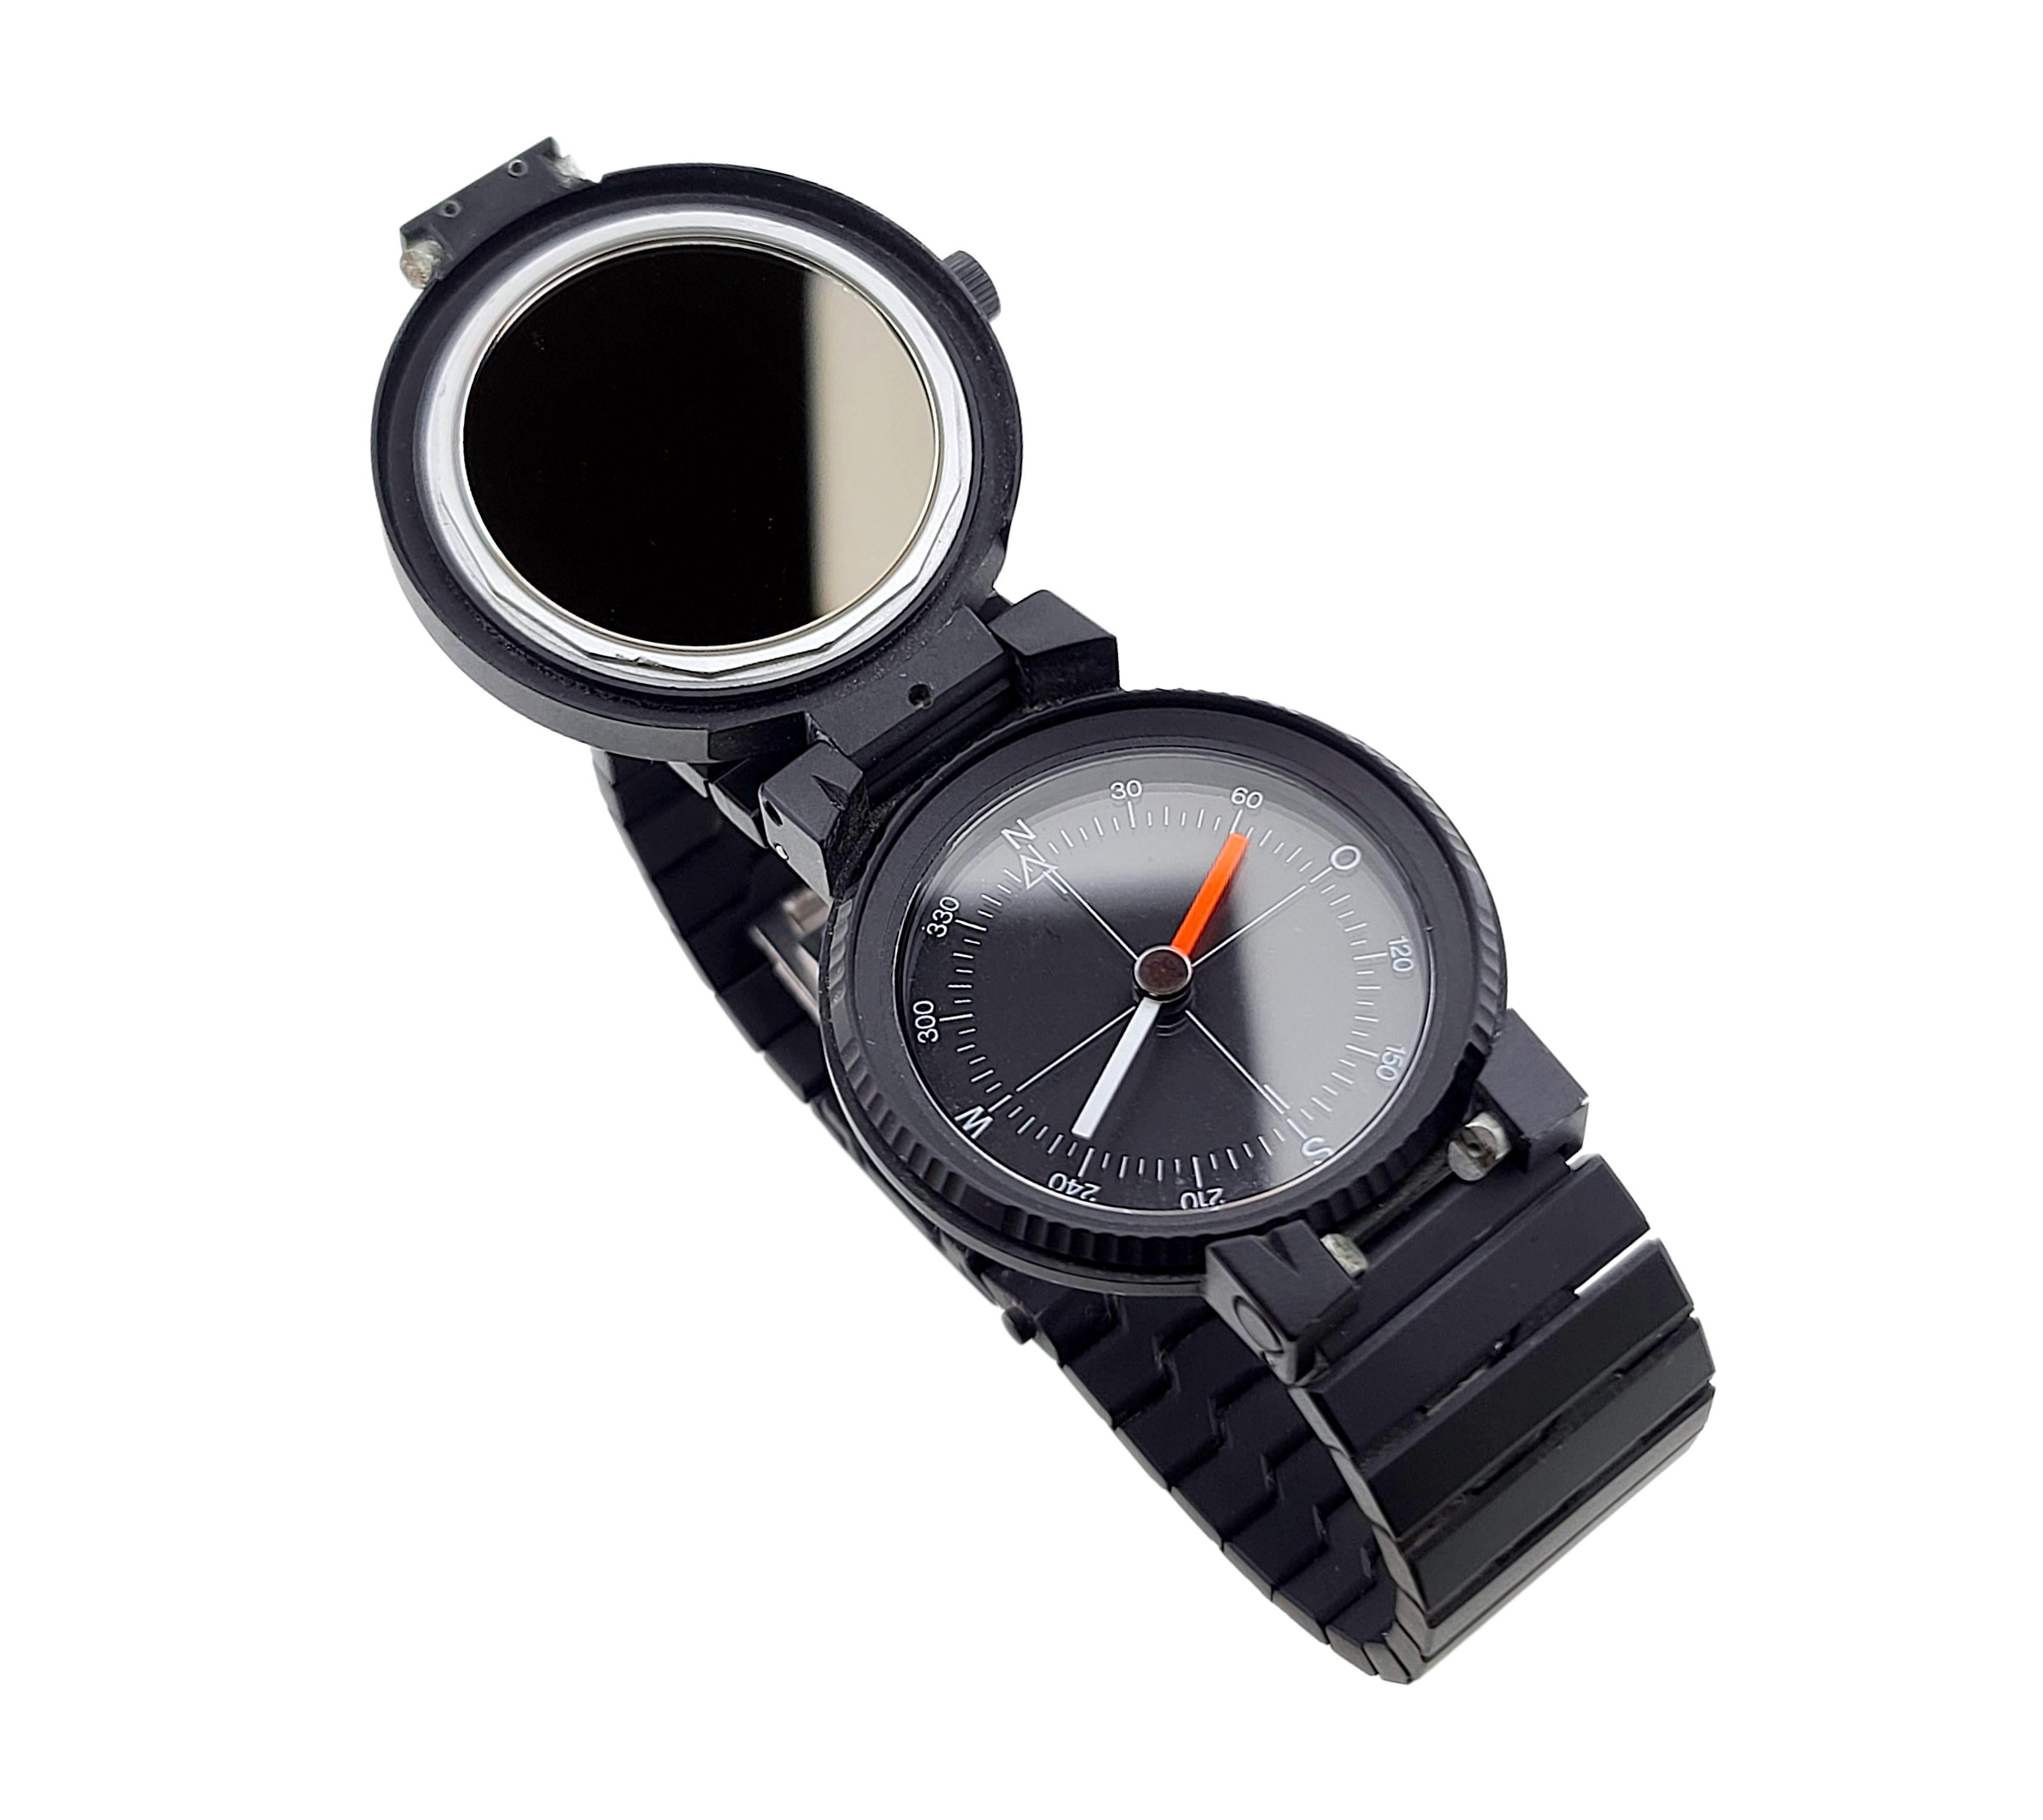 iwc porsche design compass watch